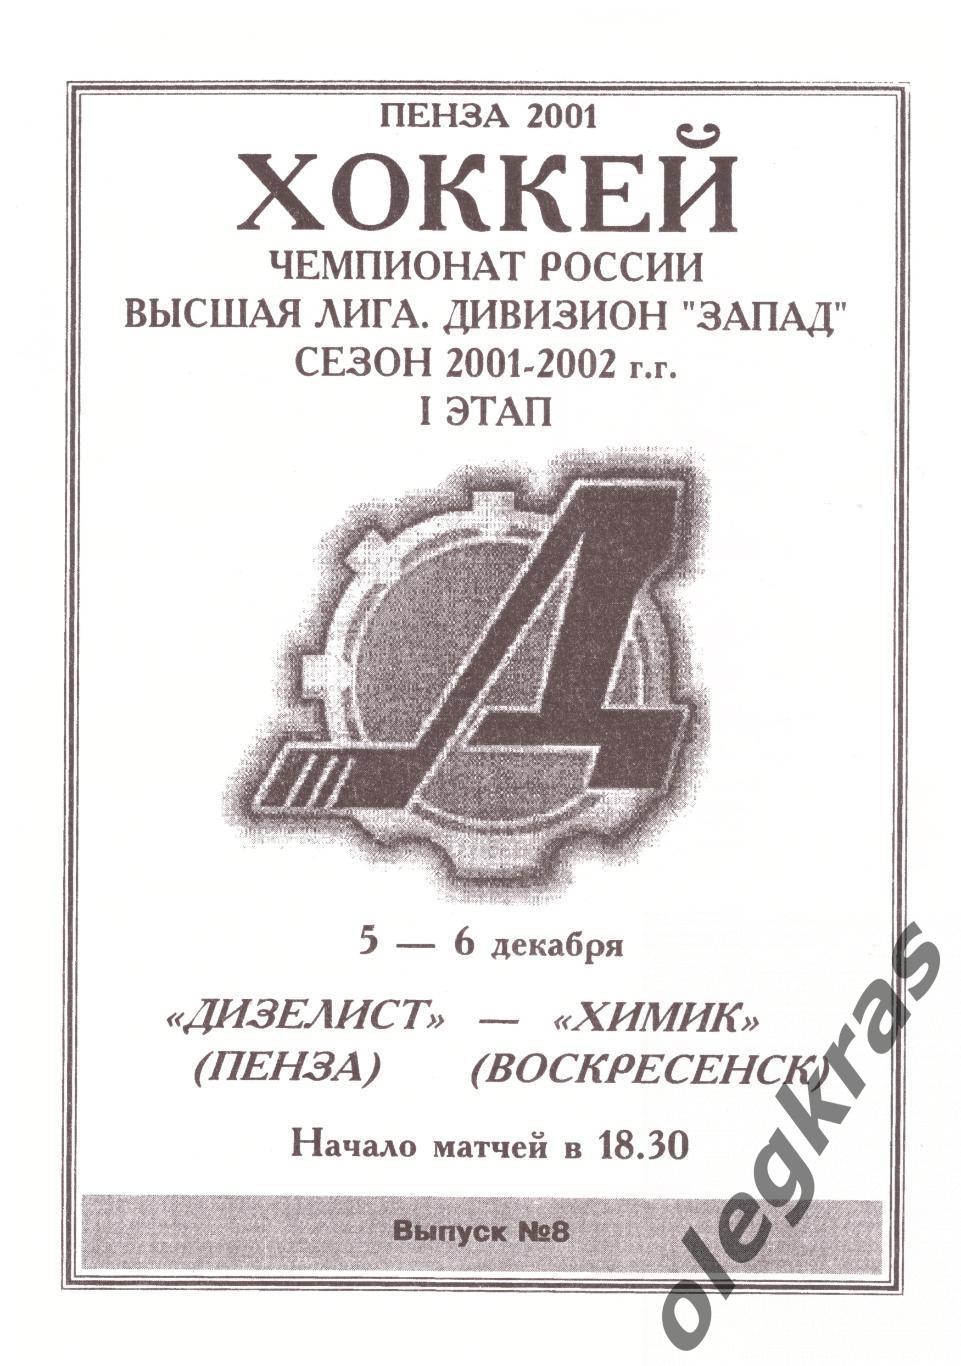 Дизелист(Пенза) - Химик(Воскресенск) - 5-6 декабря 2001 года.